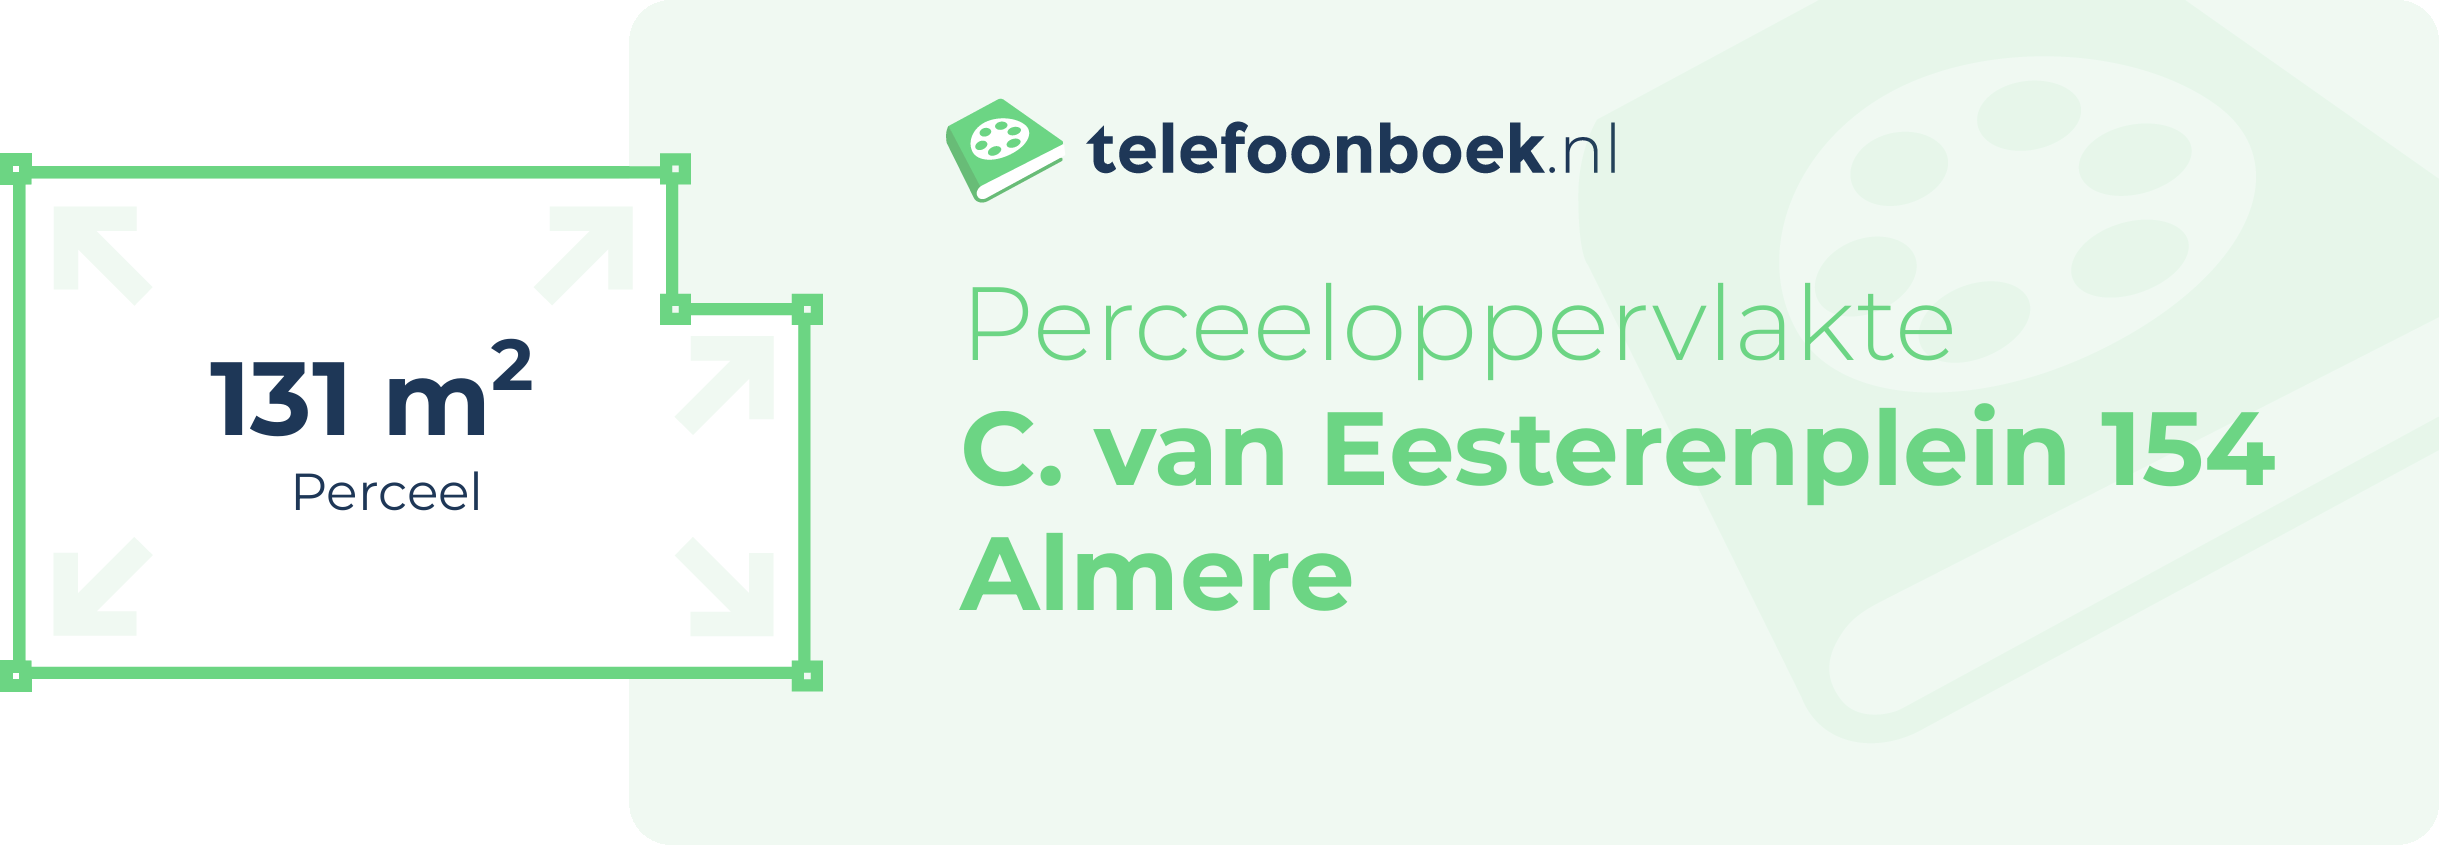 Perceeloppervlakte C. Van Eesterenplein 154 Almere